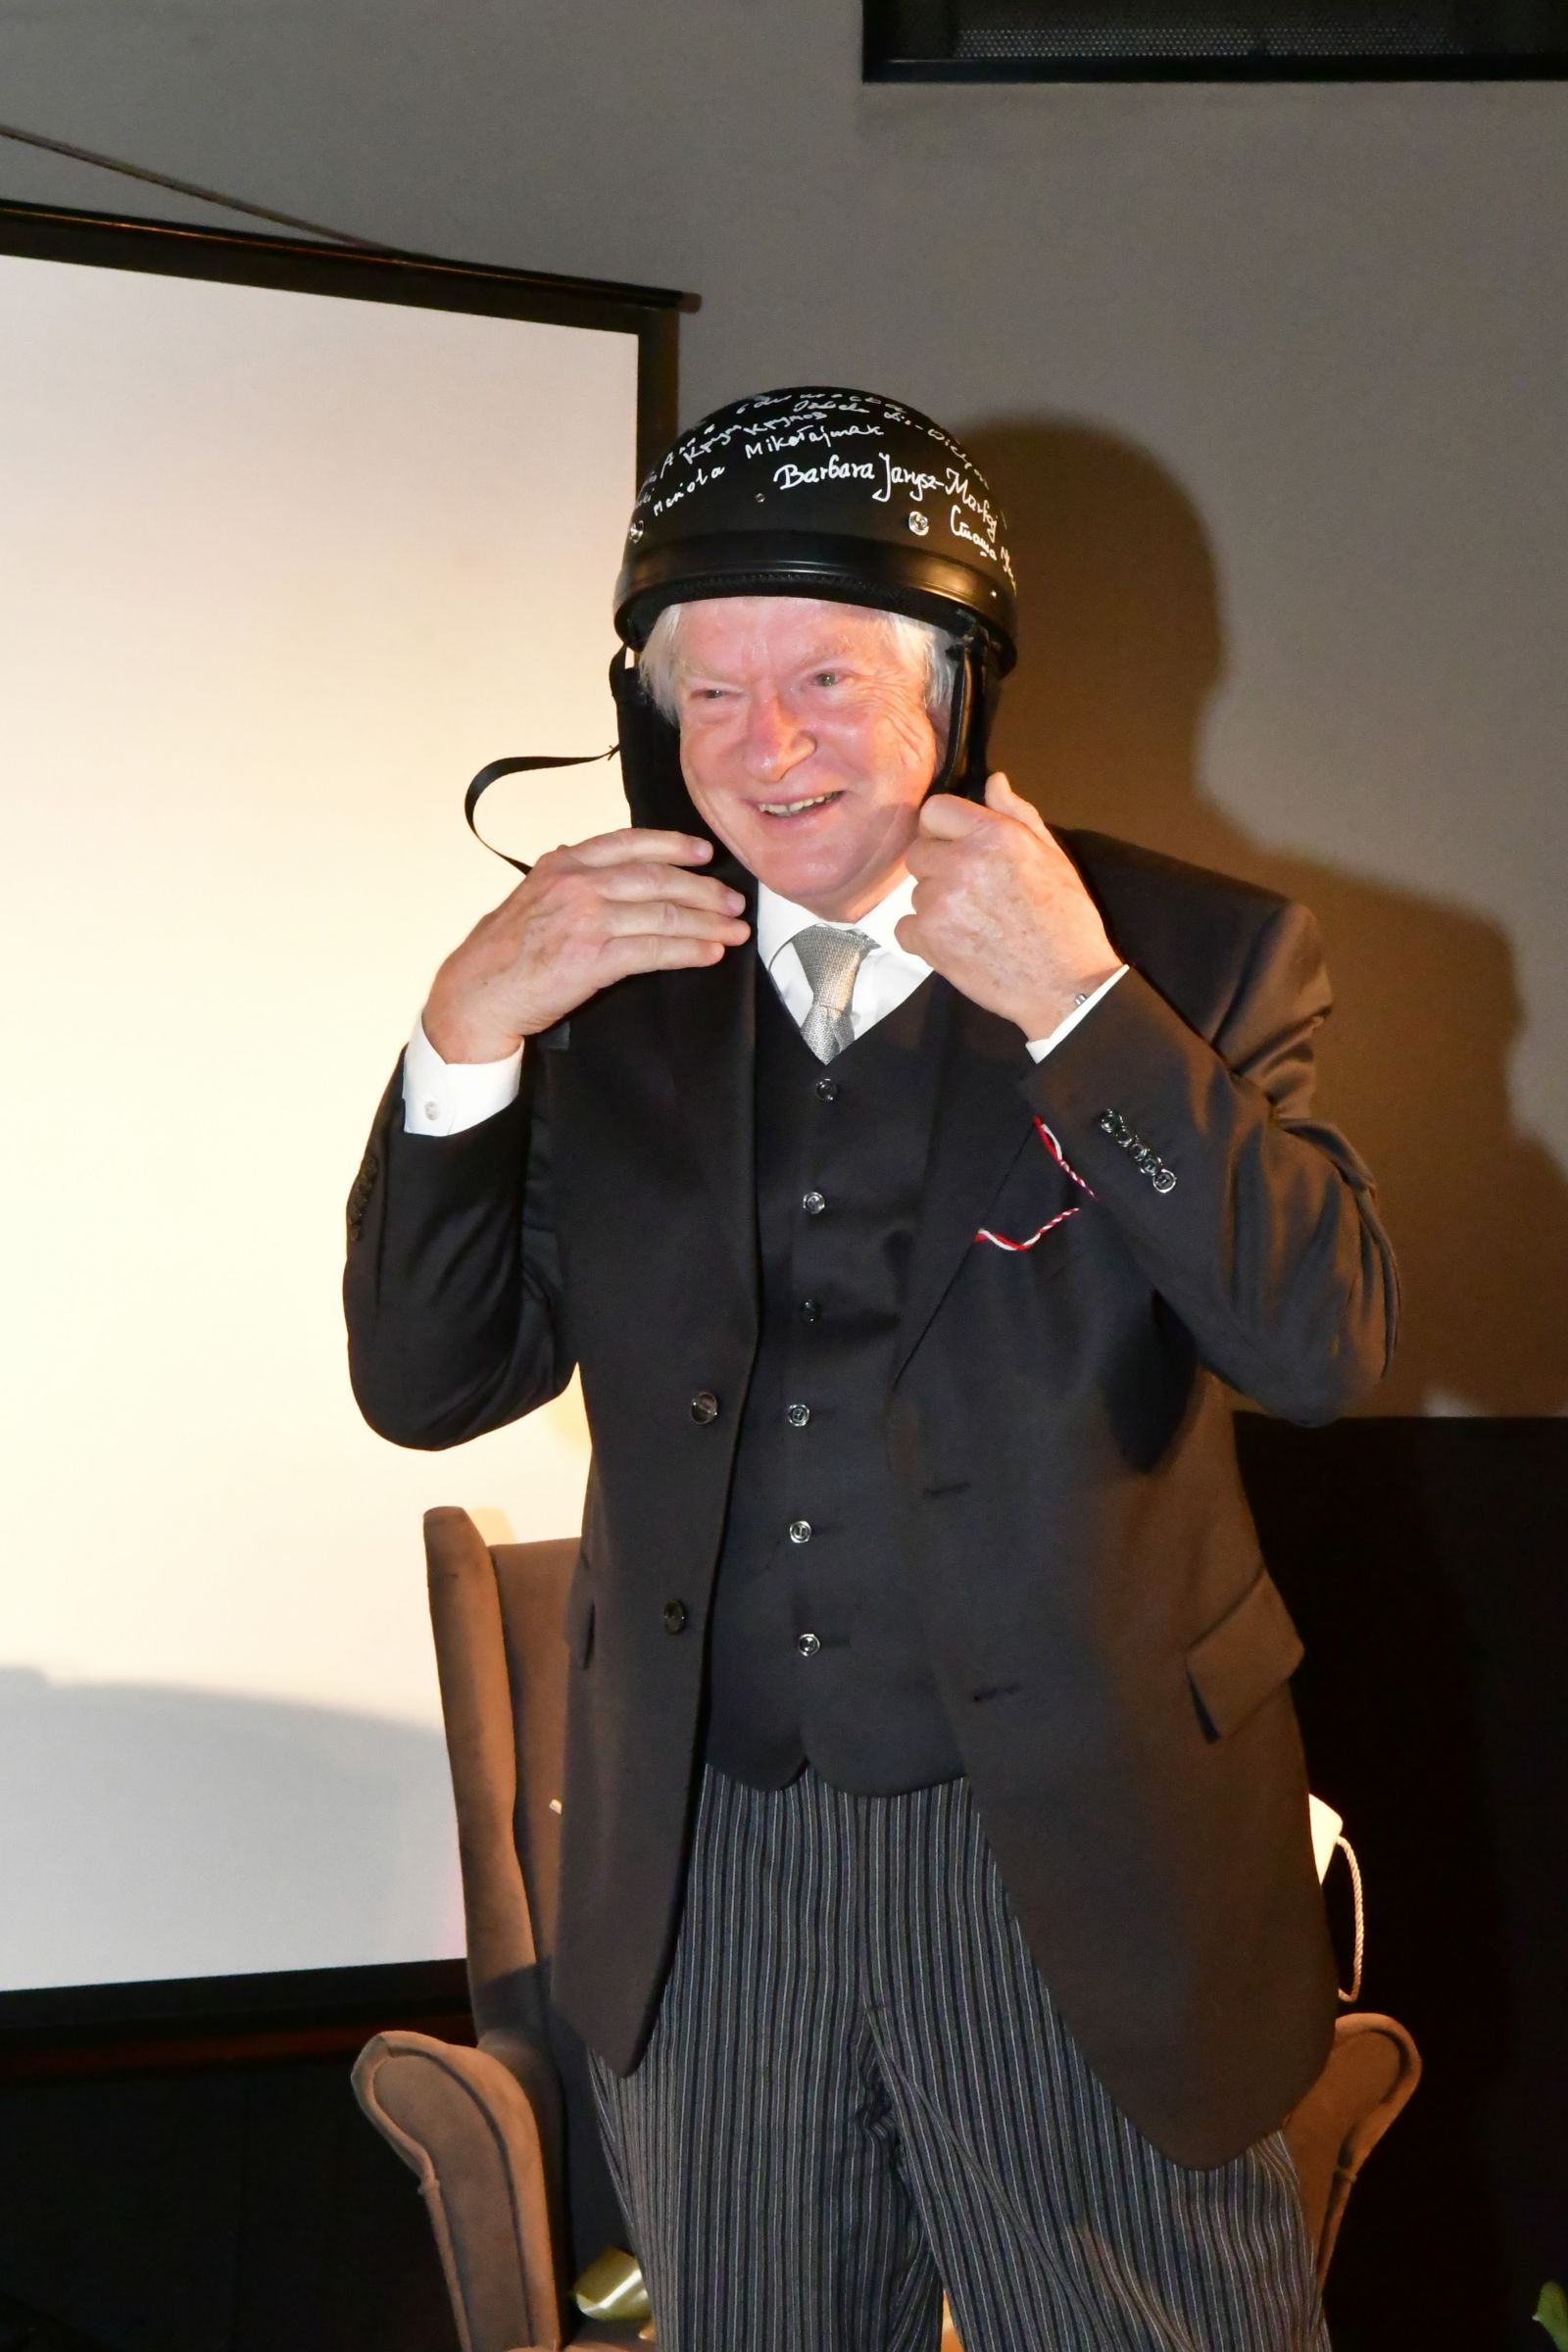 Prof. Zieliński w otrzymanym kasku motocyklowym na głowie.